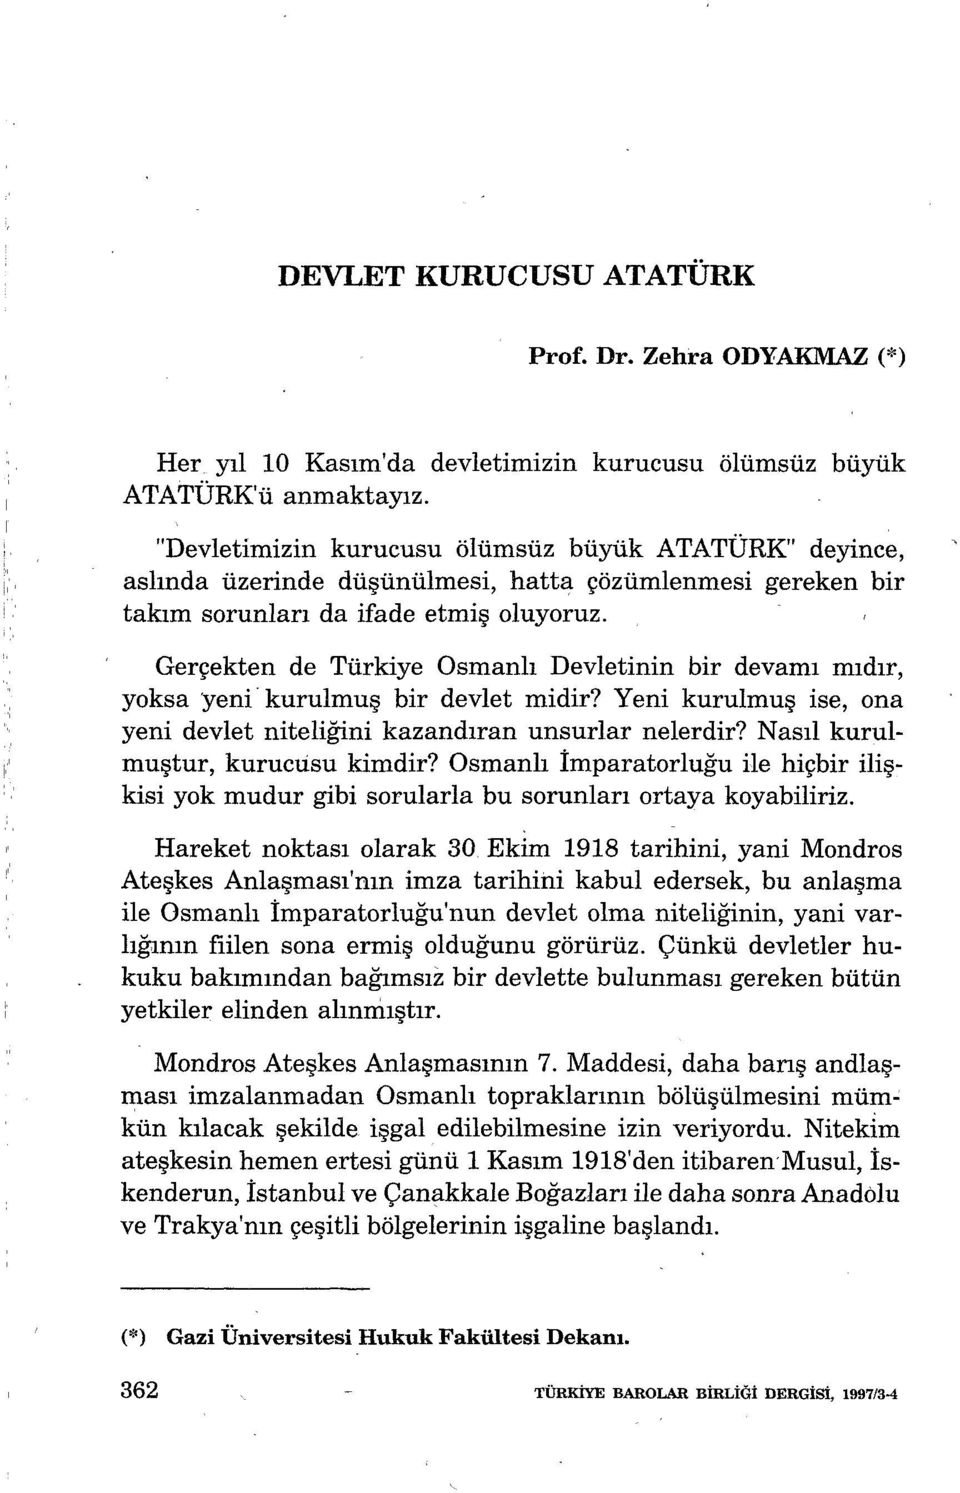 Gerçekten de Türkiye Osmanlı Devletinin bir devamı mıdır, yoksa yeni kurulmuş bir devlet midir? Yeni kurulmuş ise, ona yeni devlet niteliğini kazandıran unsurlar nelerdir?